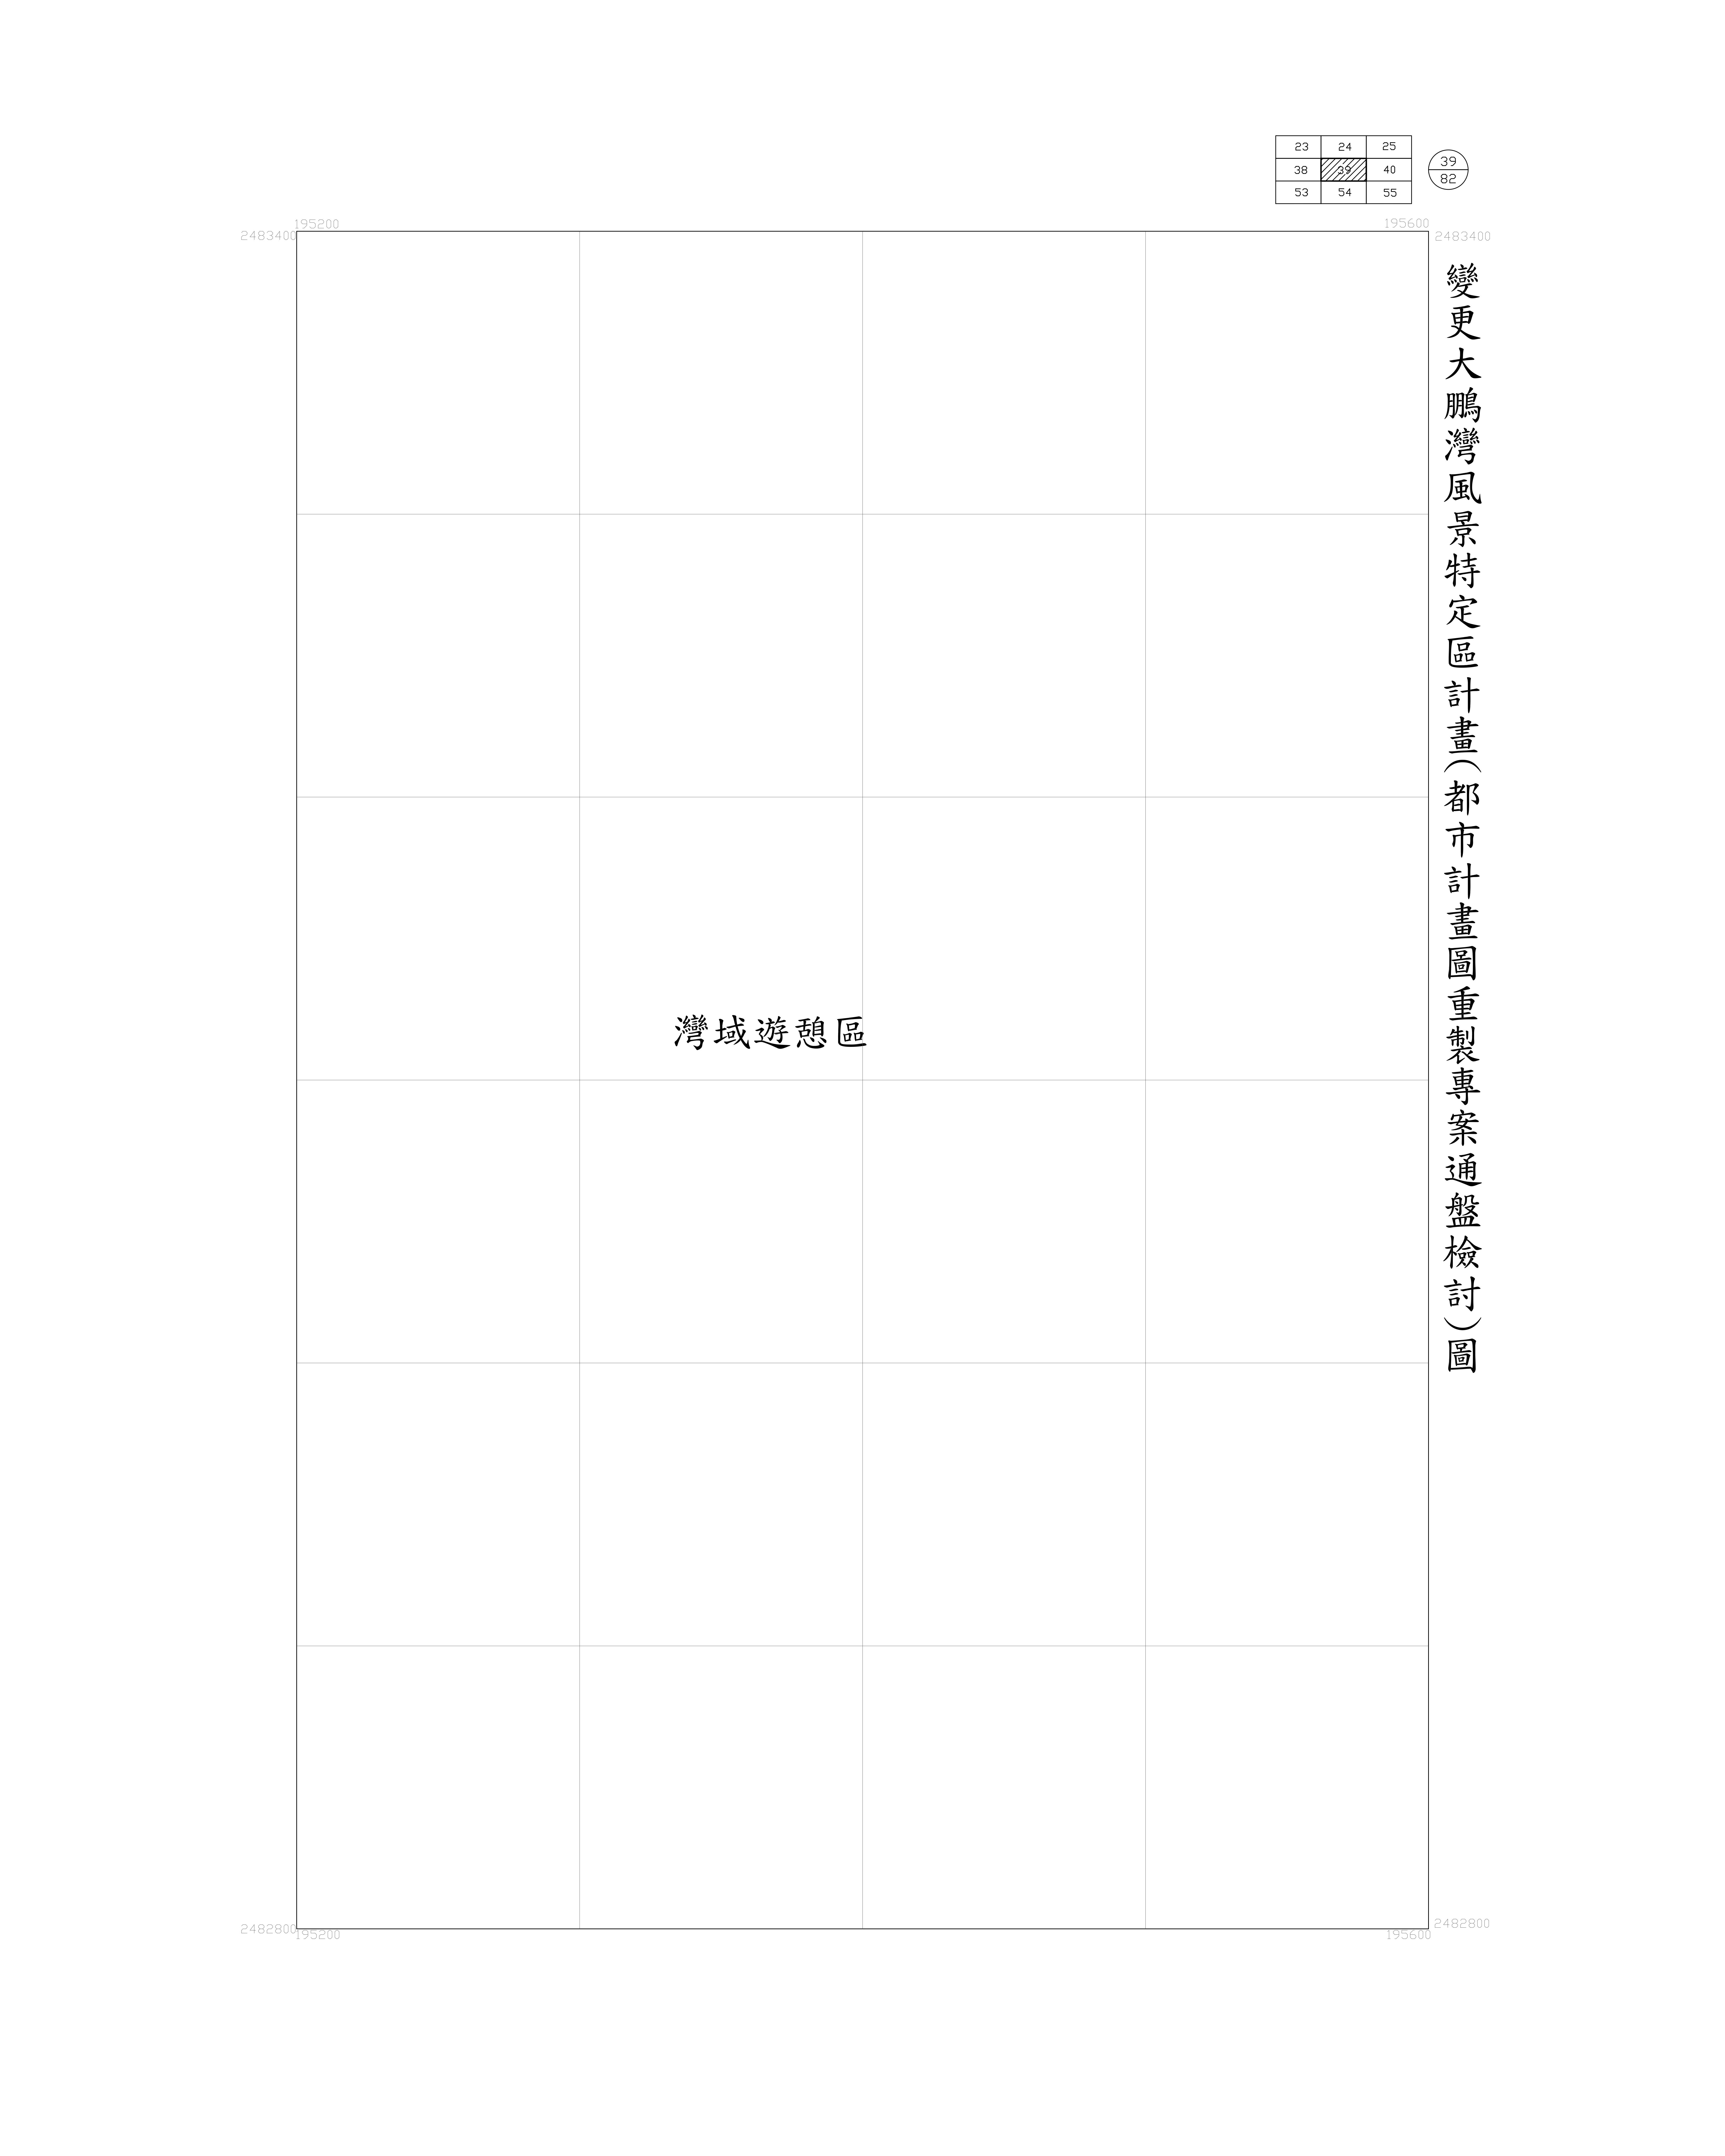 大鵬灣-都市計畫圖重製專案通盤檢討圖(核定)39-1